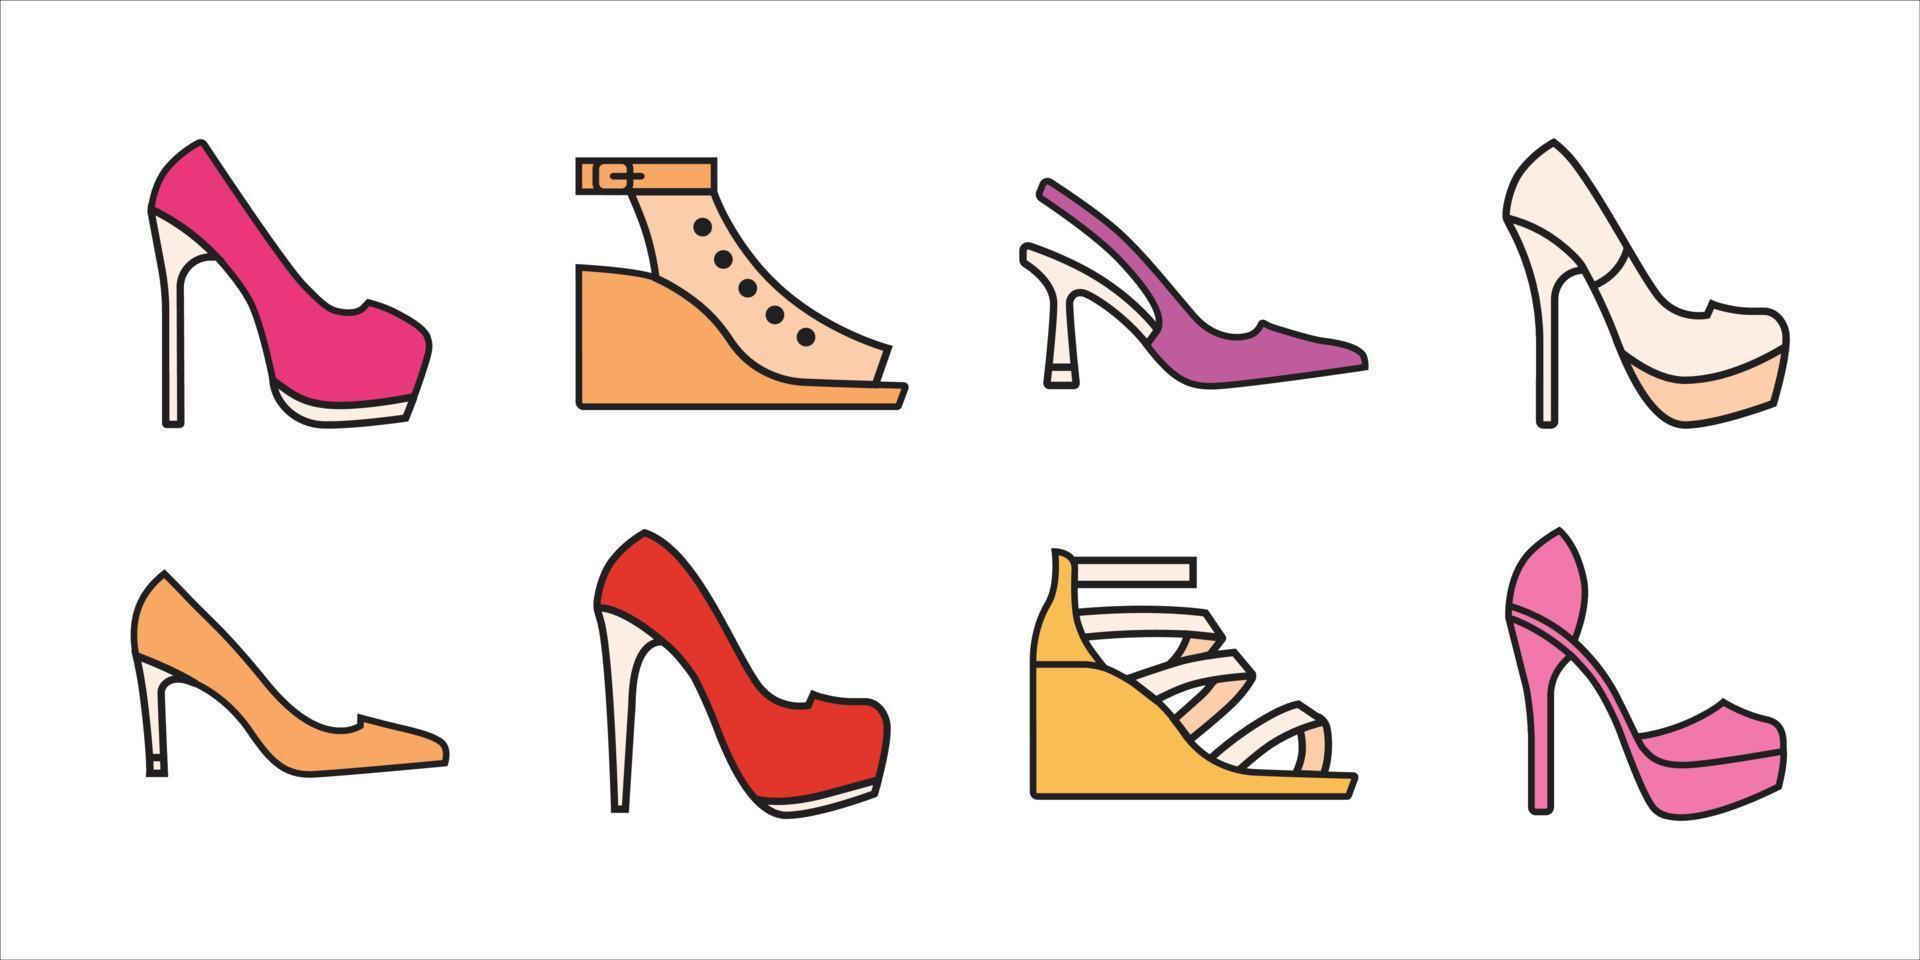 coleção de sapatos de salto alto para moda e beleza em ilustração vetorial vetor